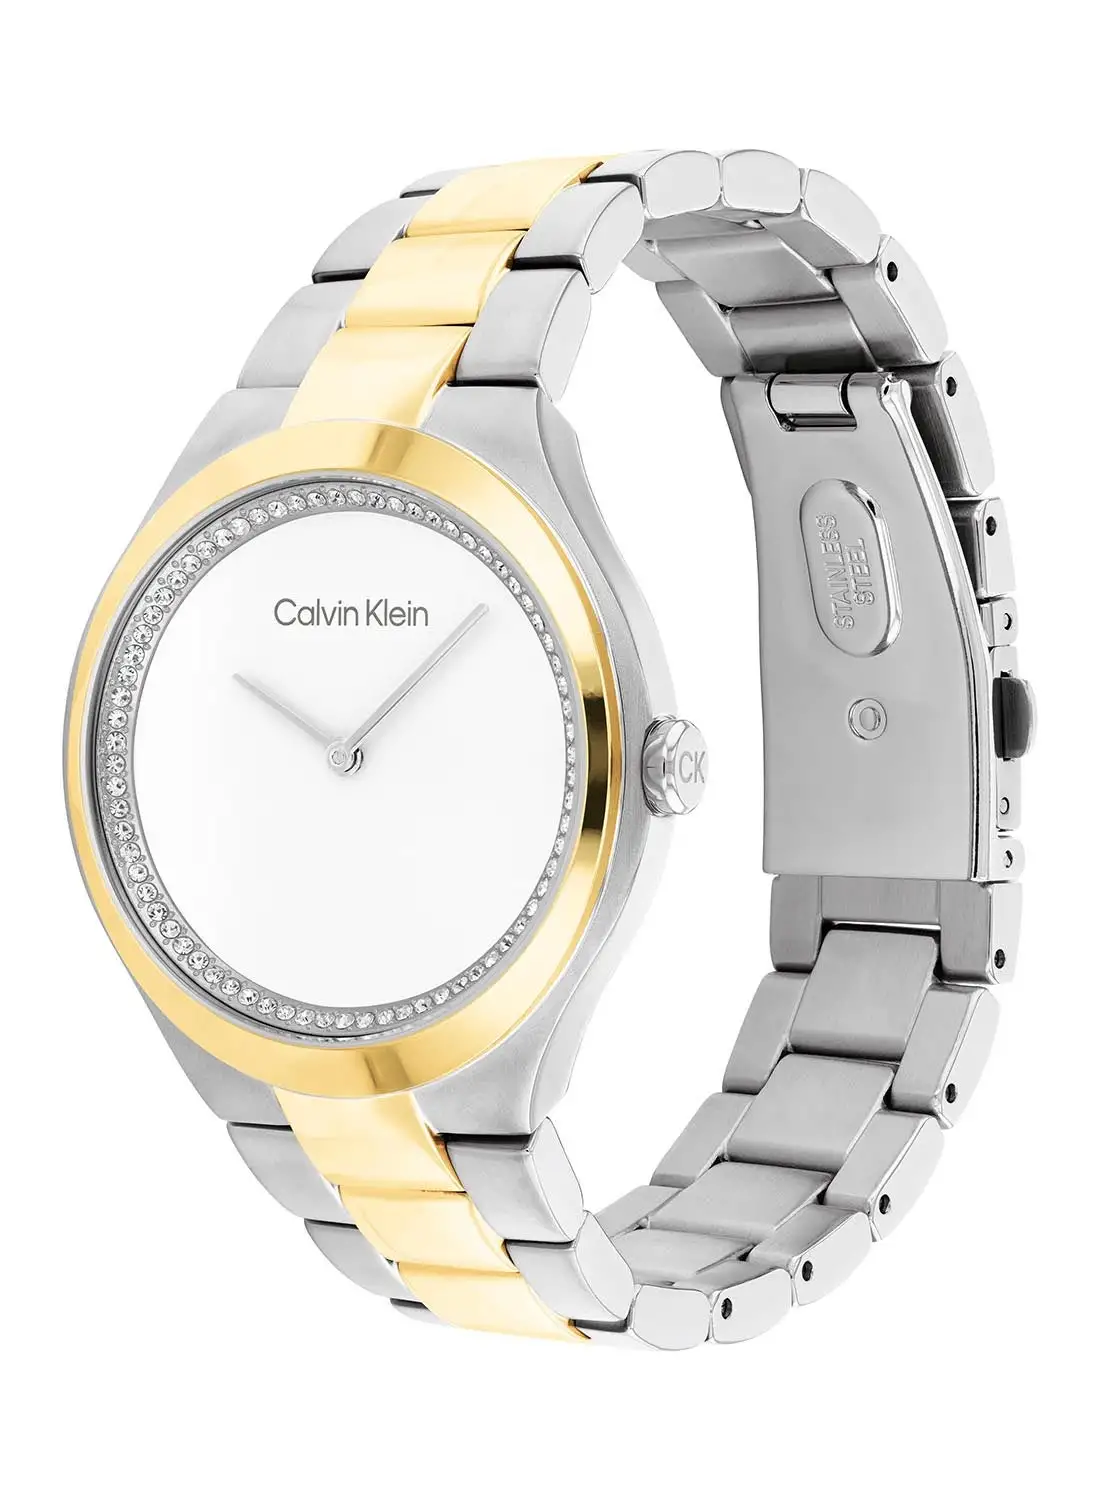 CALVIN KLEIN Women's Analog Round Shape Stainless Steel Wrist Watch 25200366 - 36 Mm